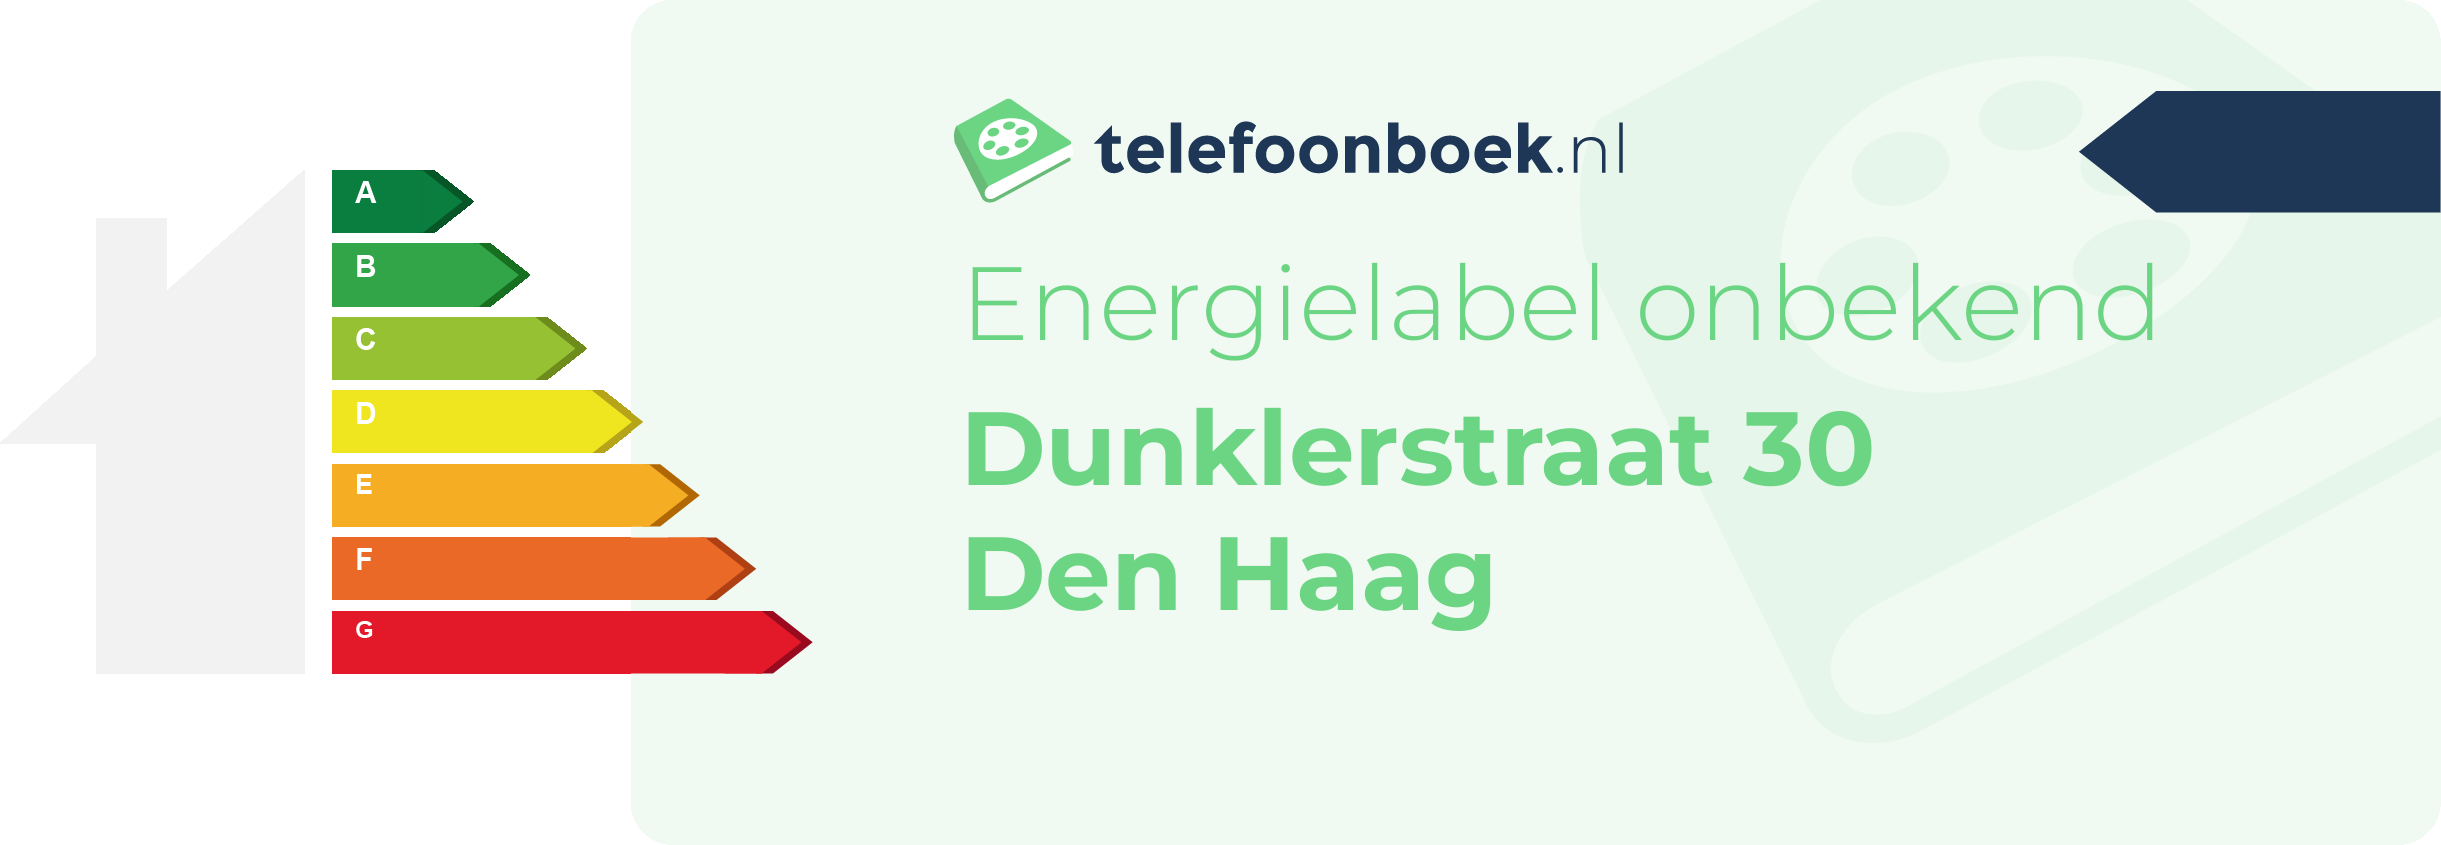 Energielabel Dunklerstraat 30 Den Haag